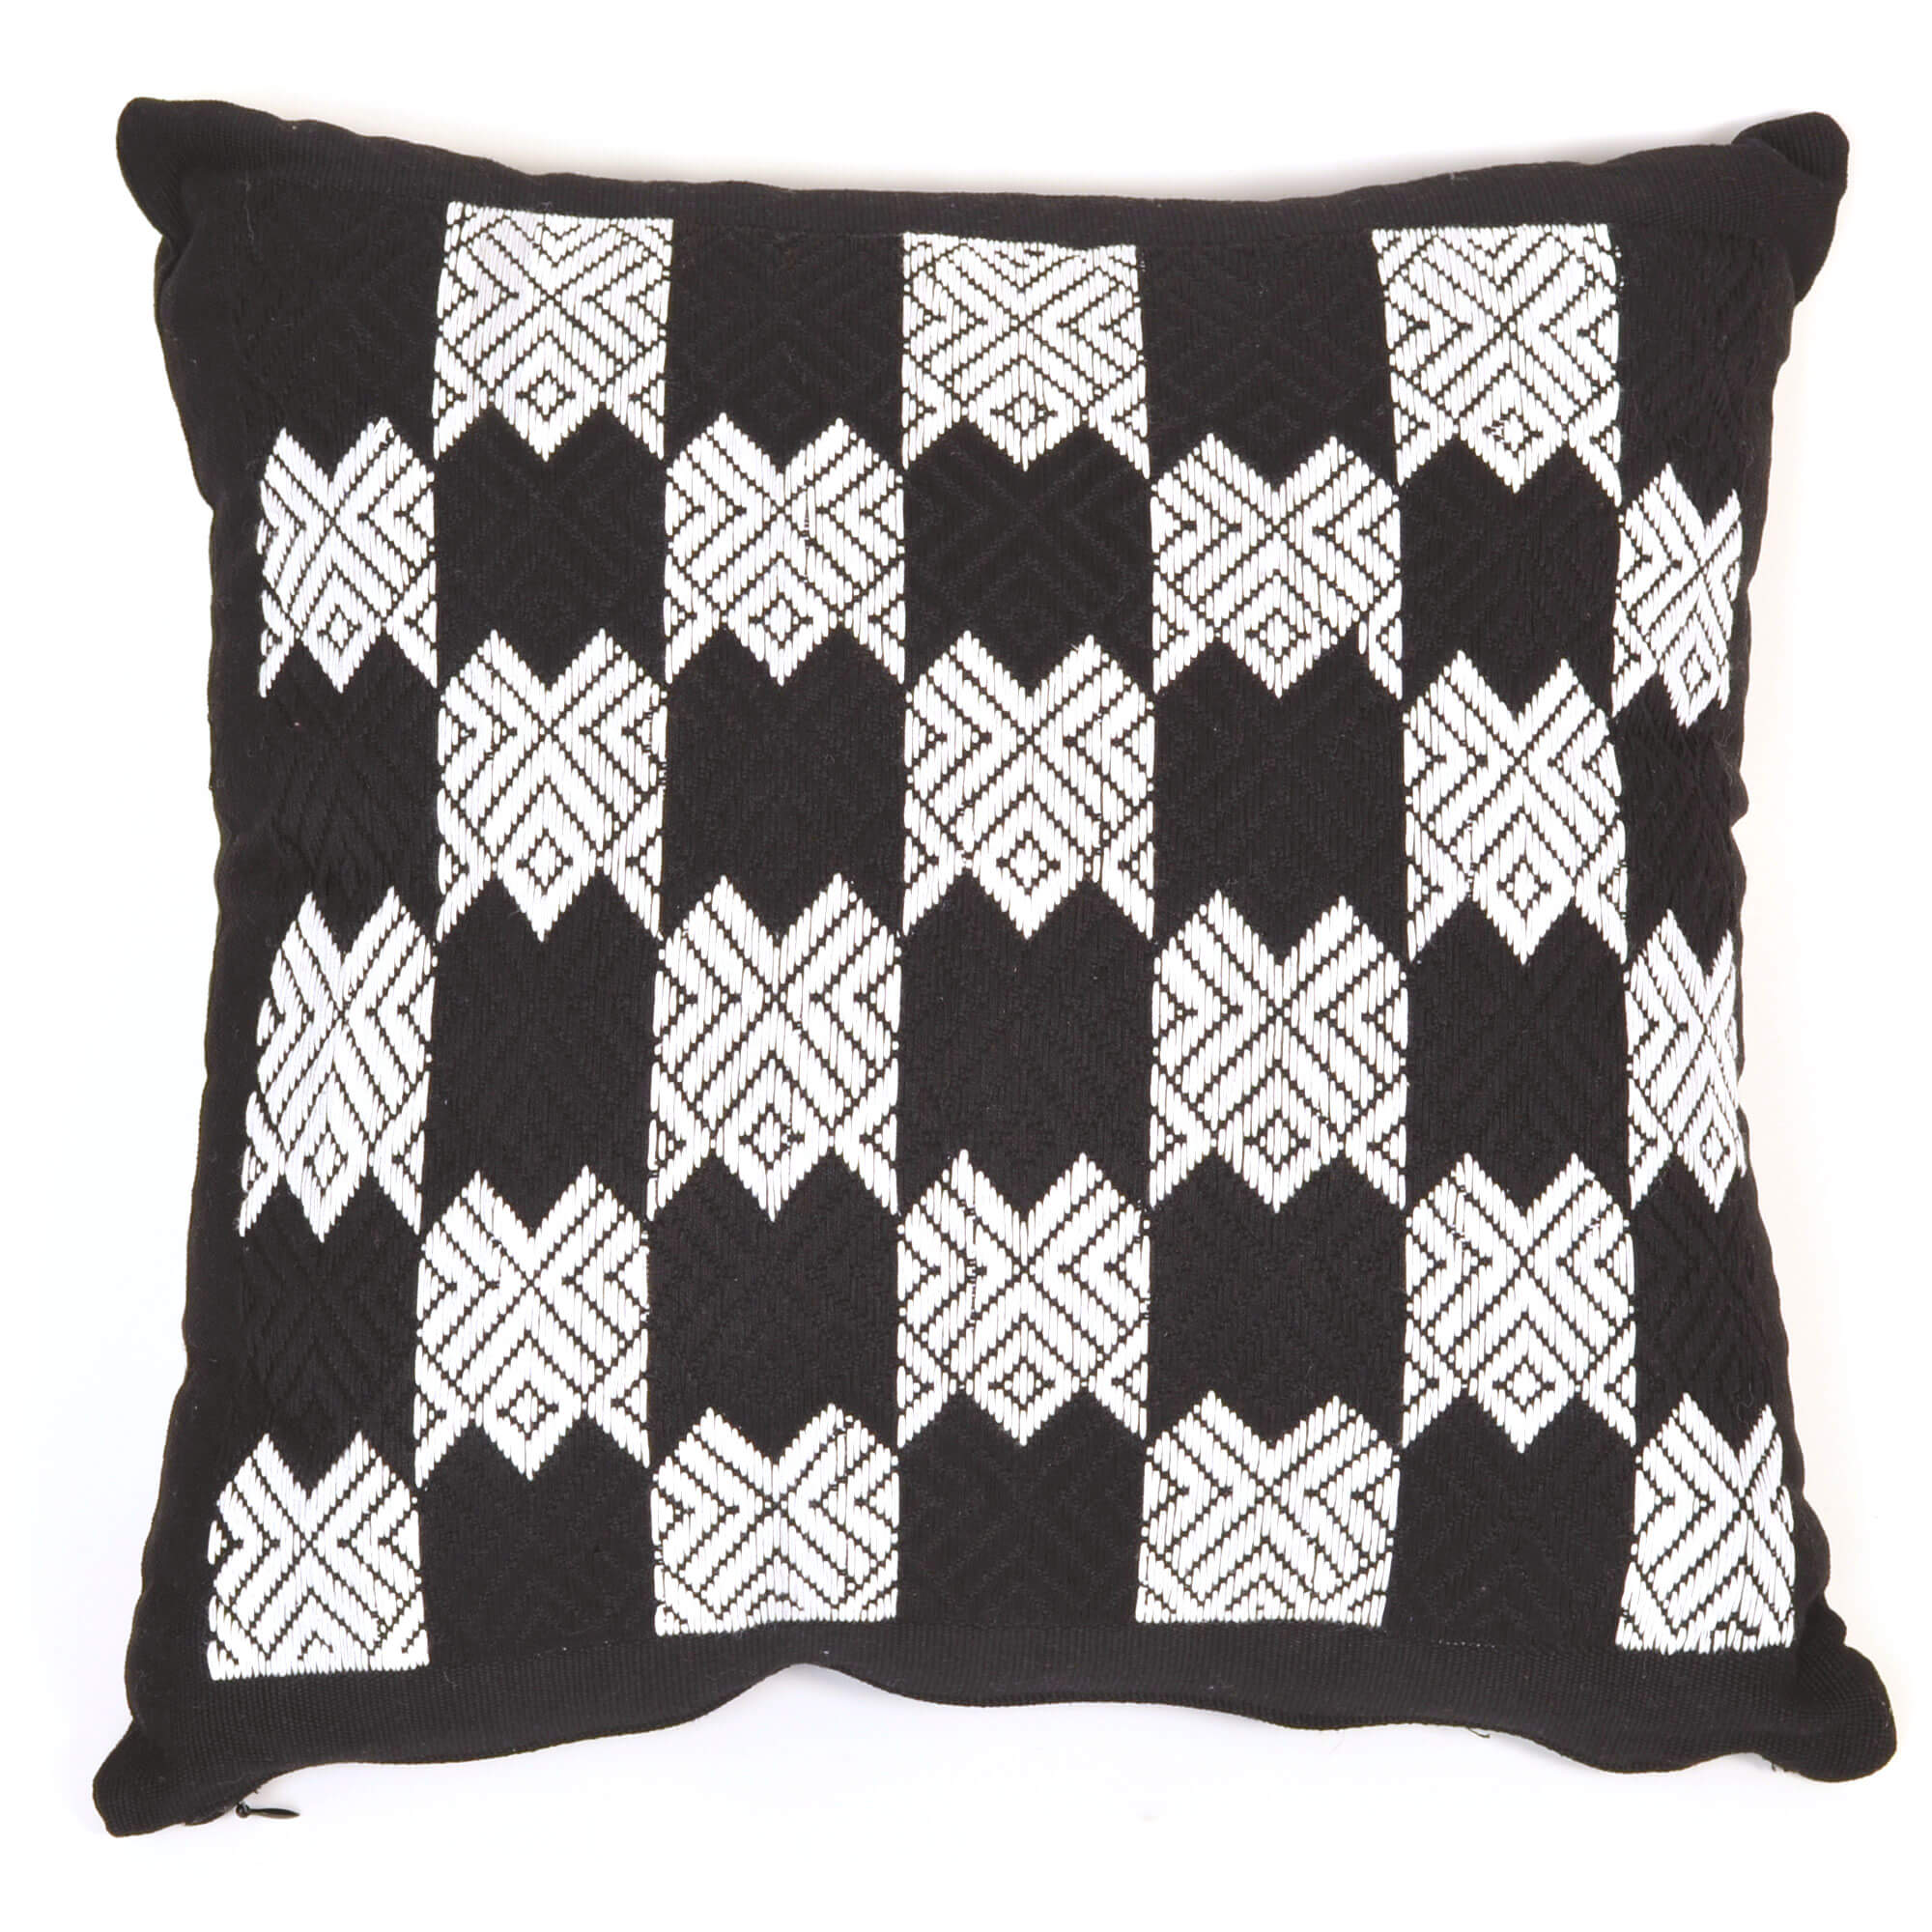 Guatemala Hand Woven Black & White Throw Pillow | Design "E"